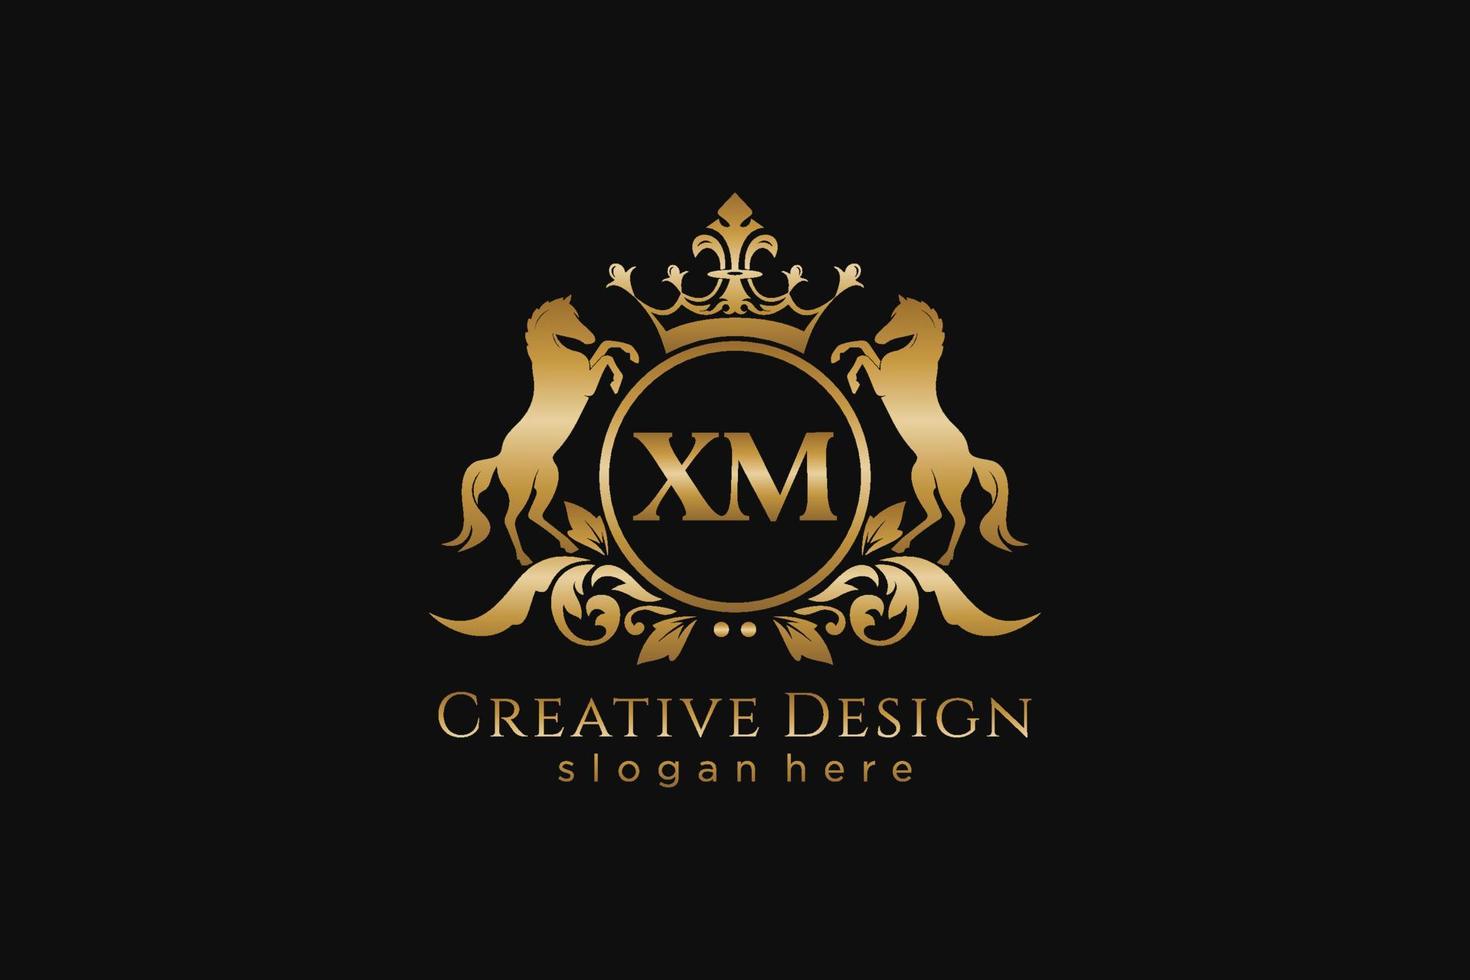 cresta dorada retro xm inicial con círculo y dos caballos, plantilla de placa con pergaminos y corona real, perfecta para proyectos de marca de lujo vector